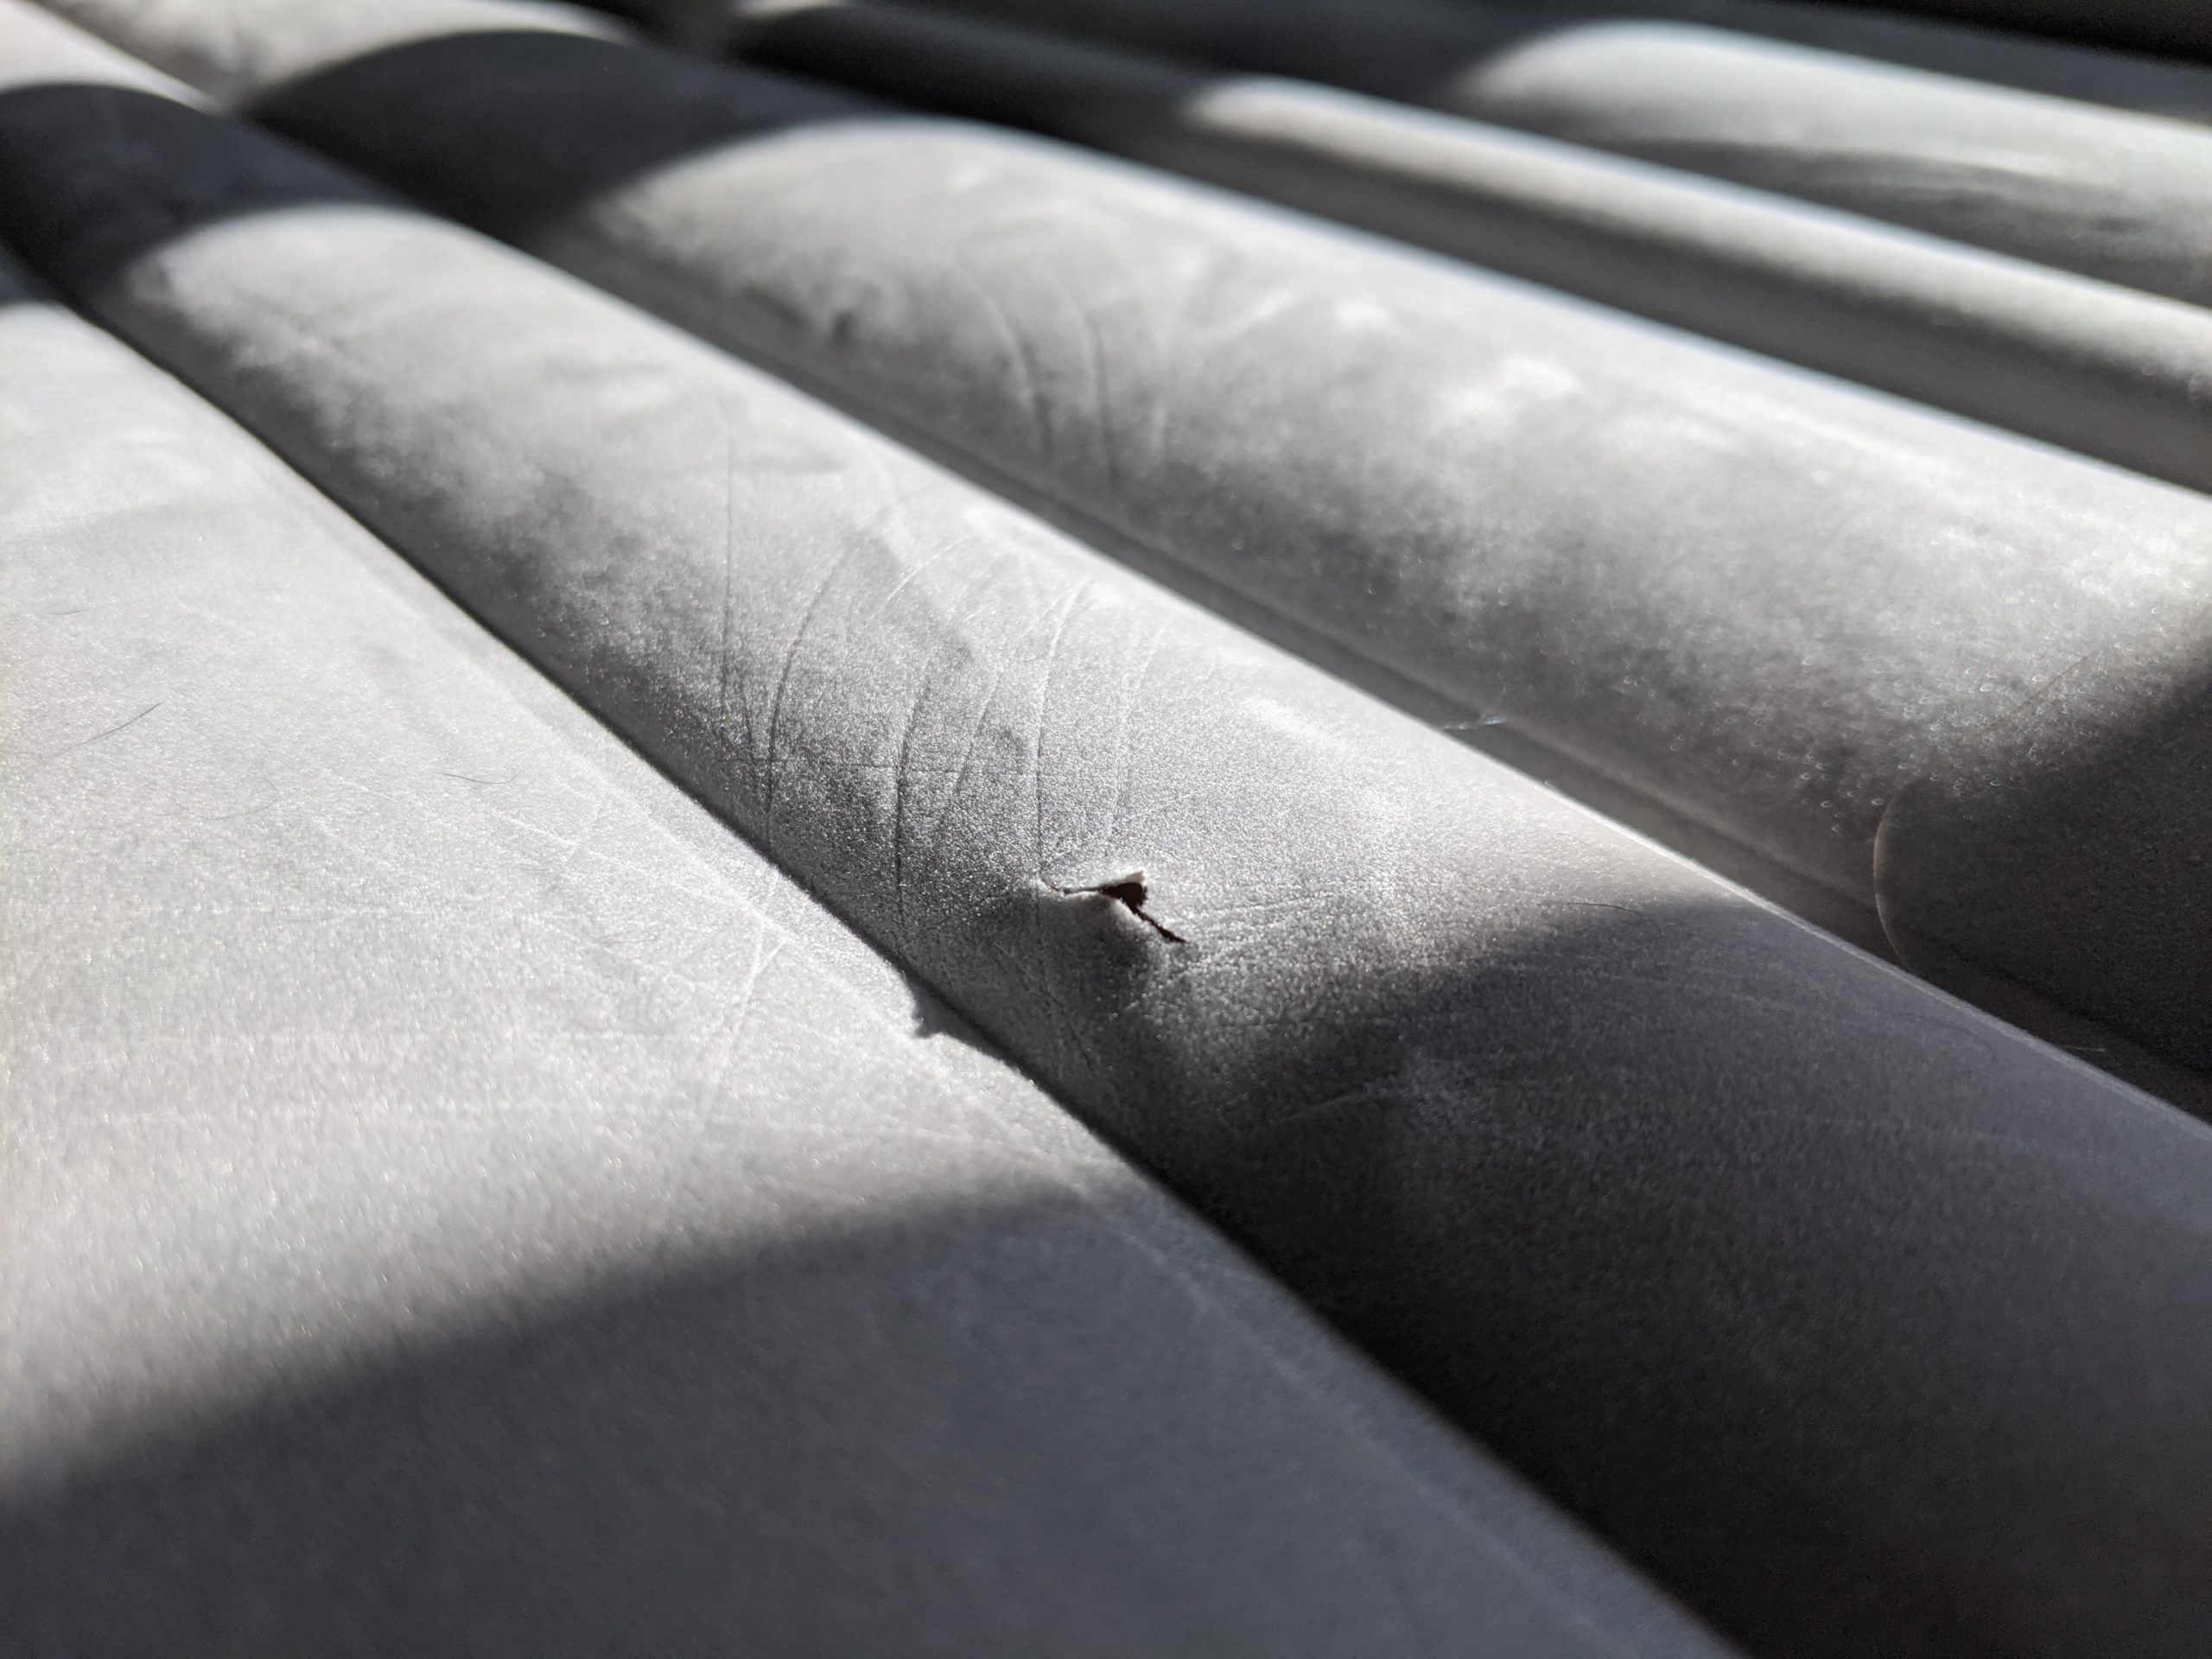 repair leak in coleman air mattress